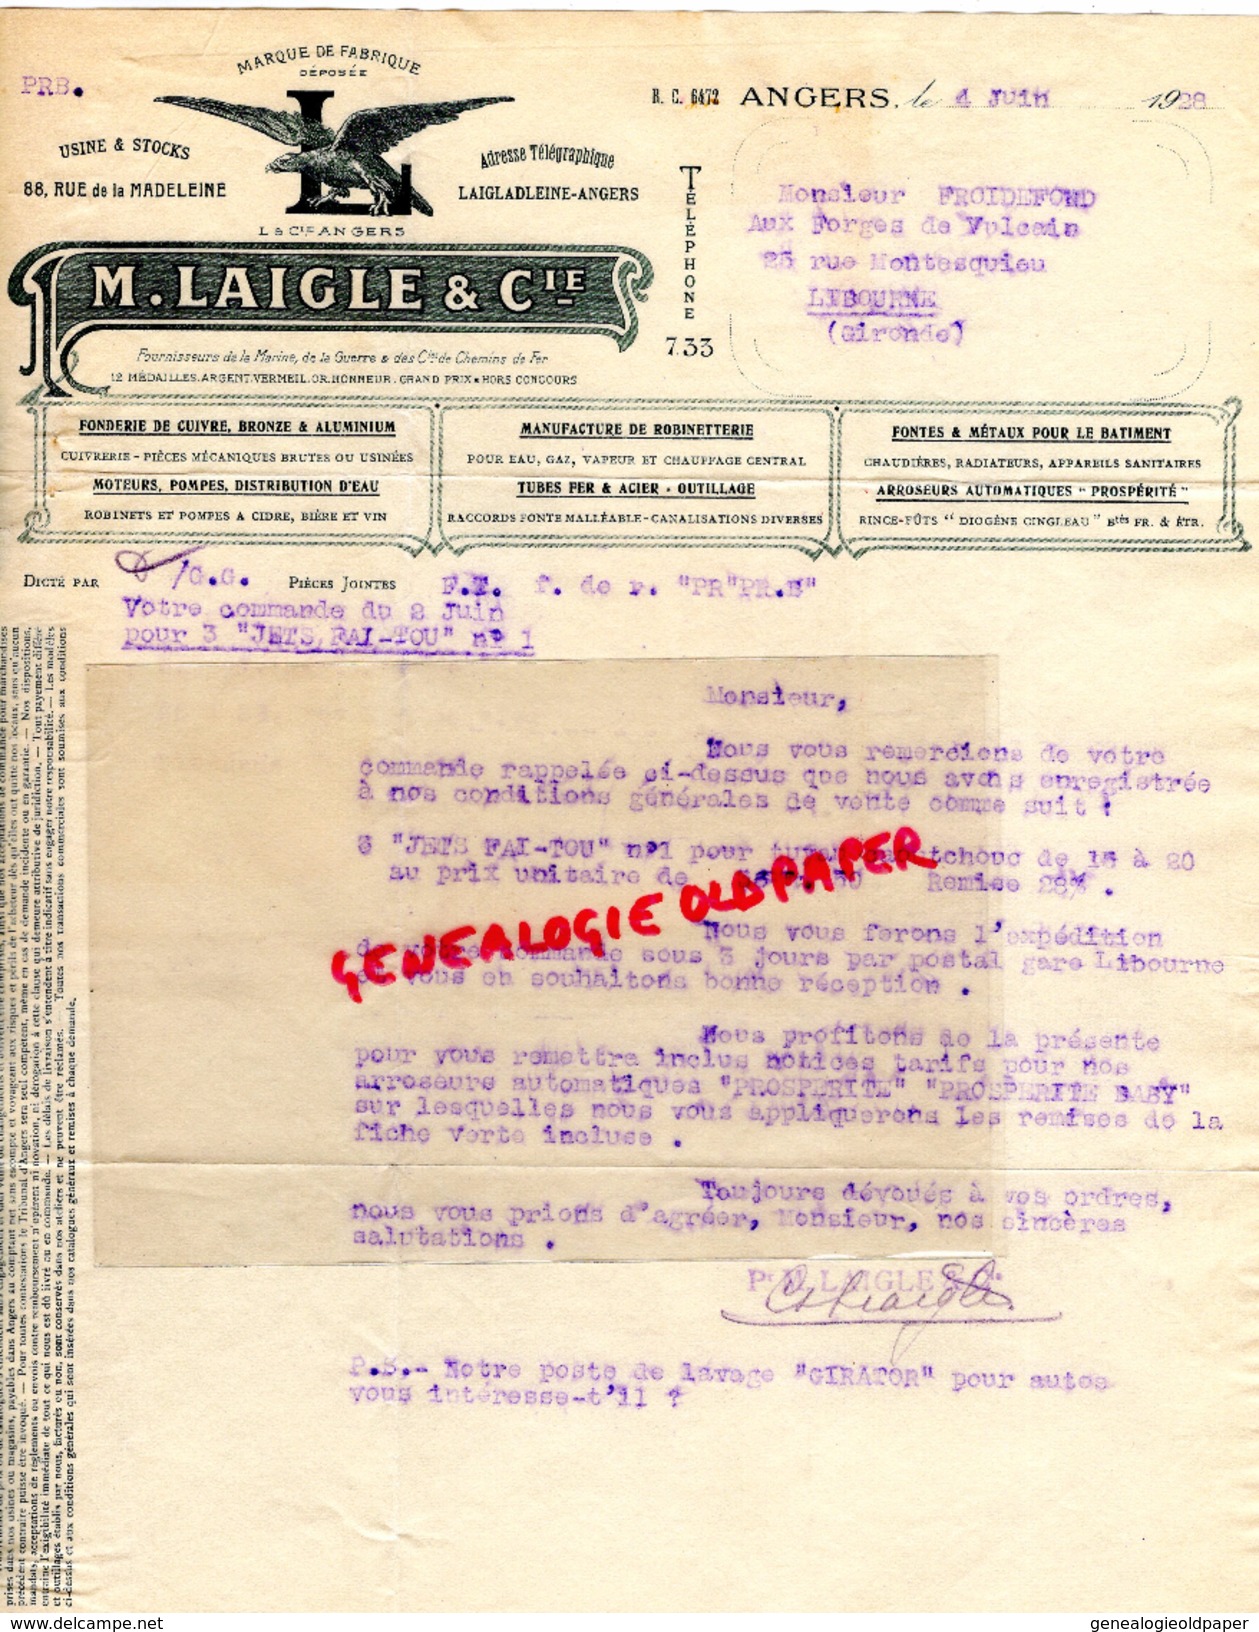 49 - ANGERS- FACTURE M. LAIGLE- AIGLE- FONDERIE CUIVRE BRONZE ALUMIMIUM- ROBINETTERIE- 1928 - Petits Métiers